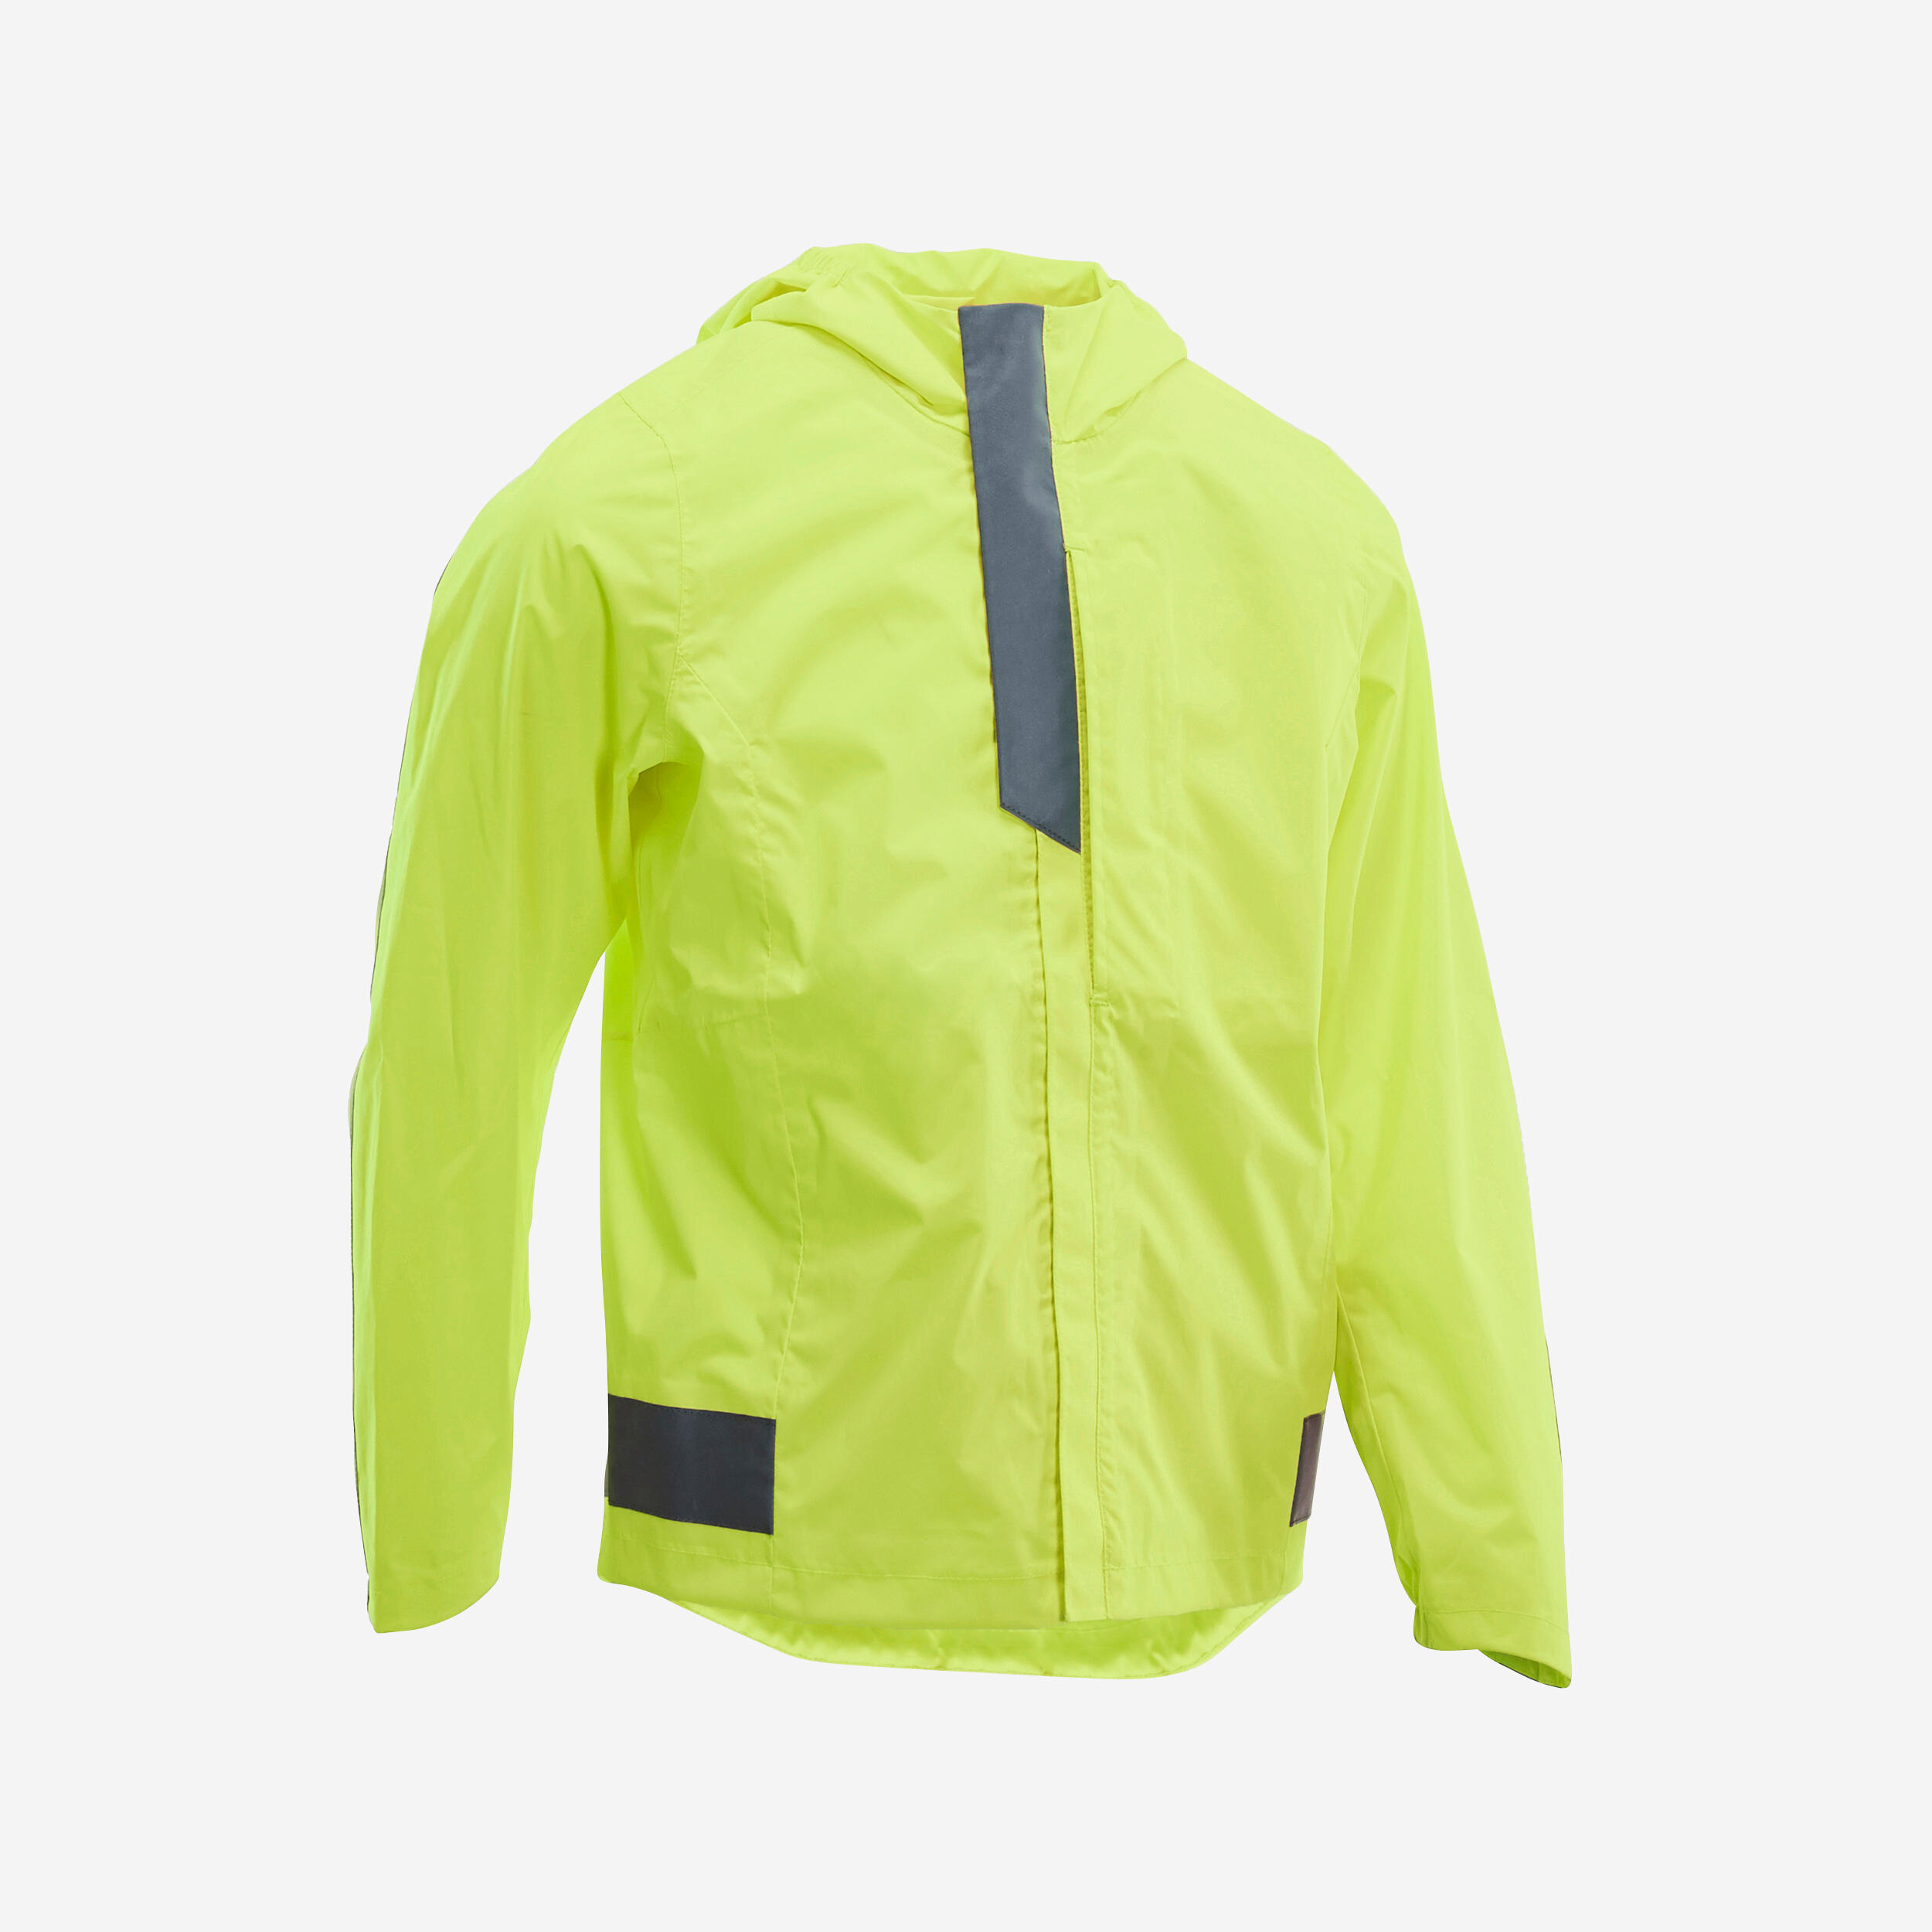 waterproof high vis cycling jacket